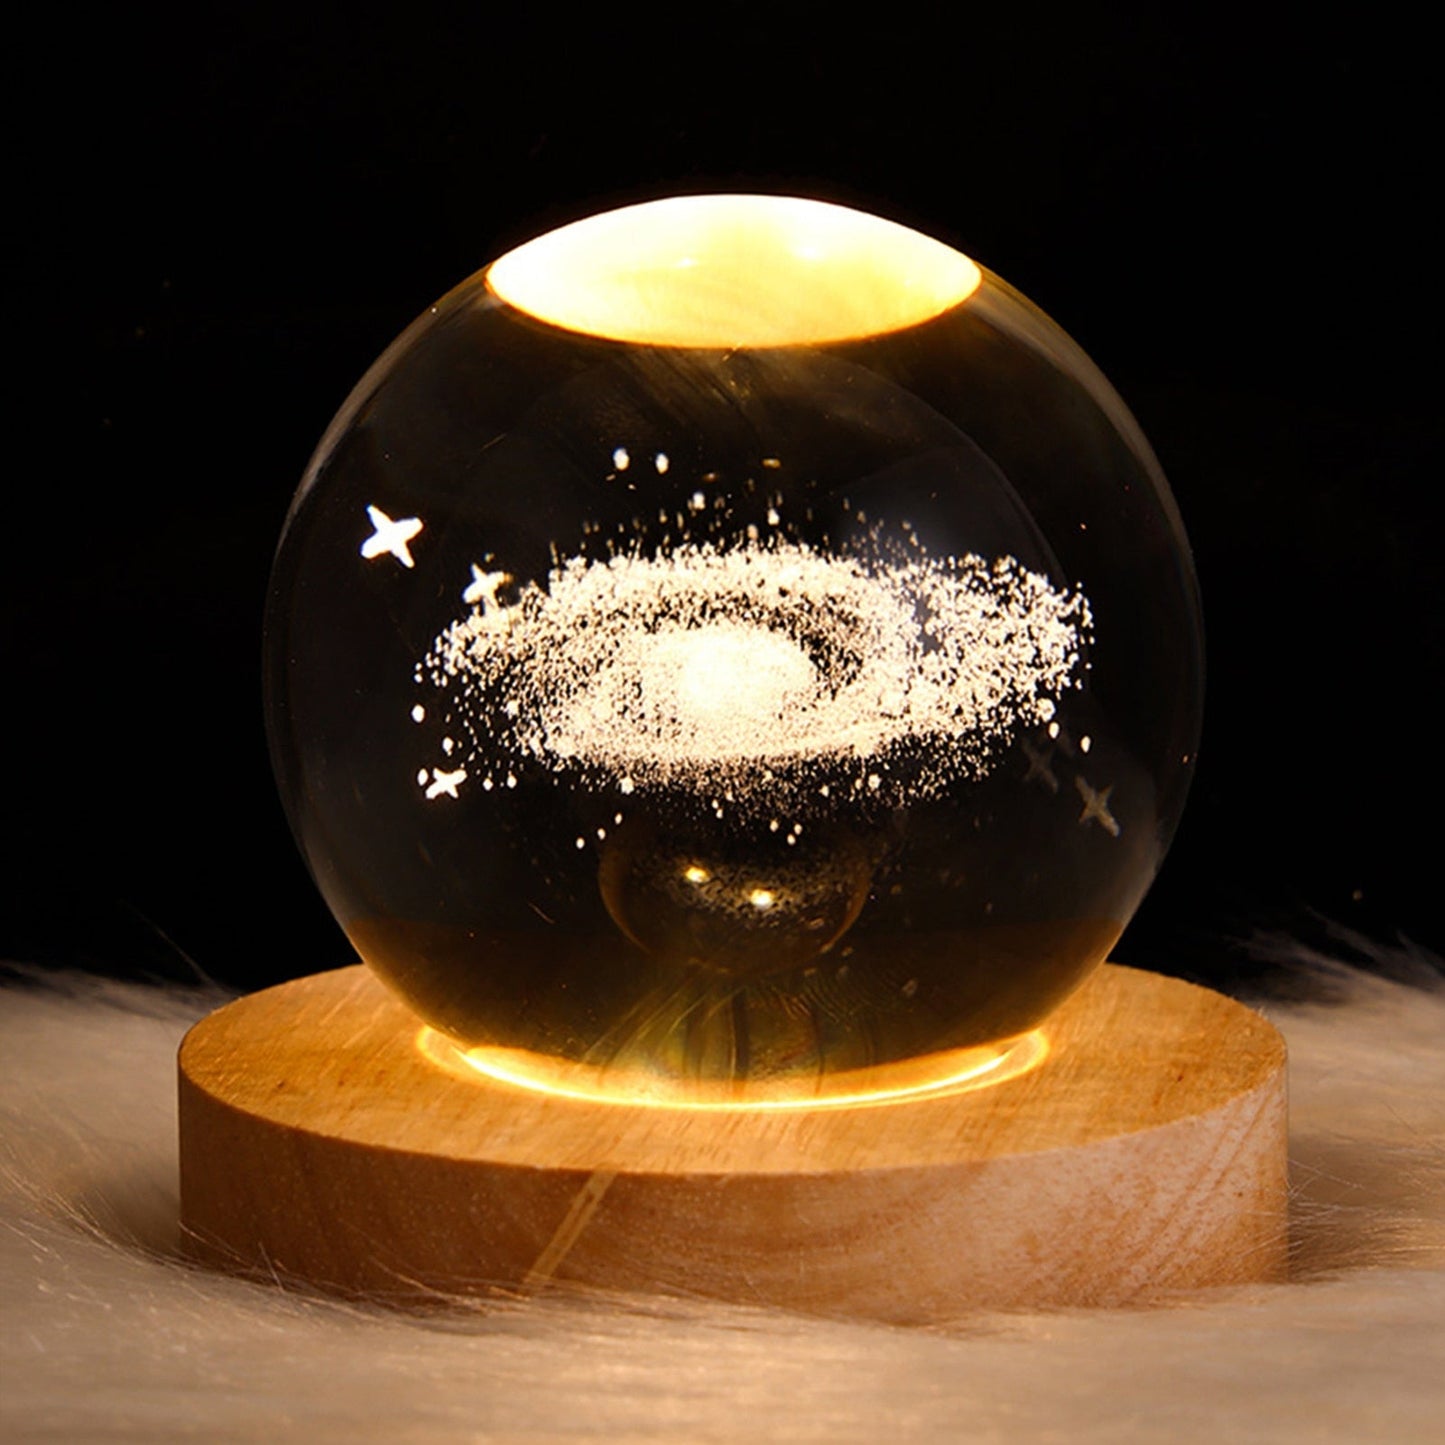  Galaxy Crystal Ball sold by Fleurlovin, Free Shipping Worldwide